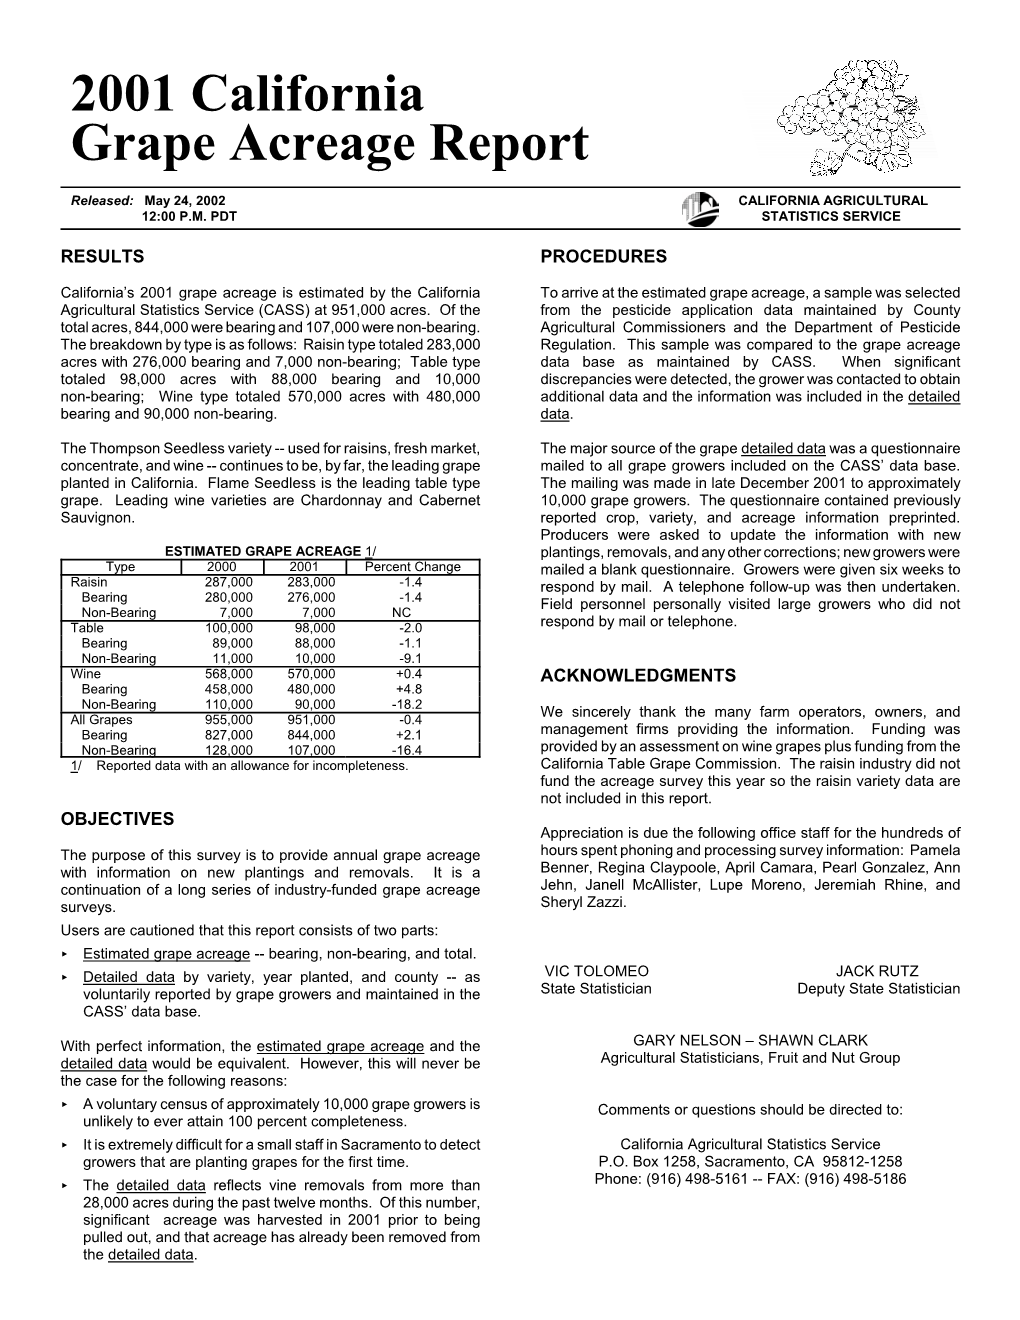 2001 California Grape Acreage Report